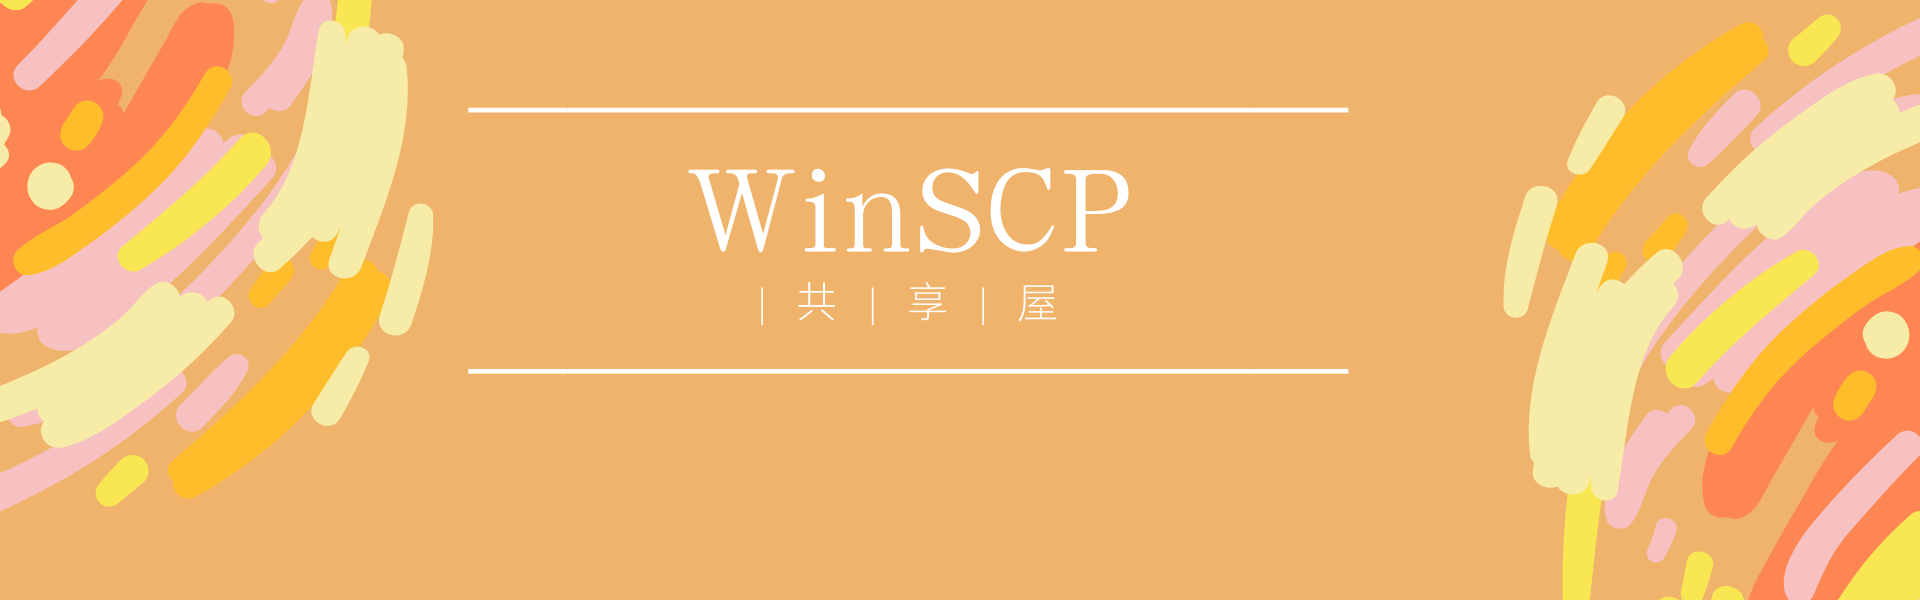 WinSCP-6.3.3软件的安装以及使用教程 | 共享屋|共享屋